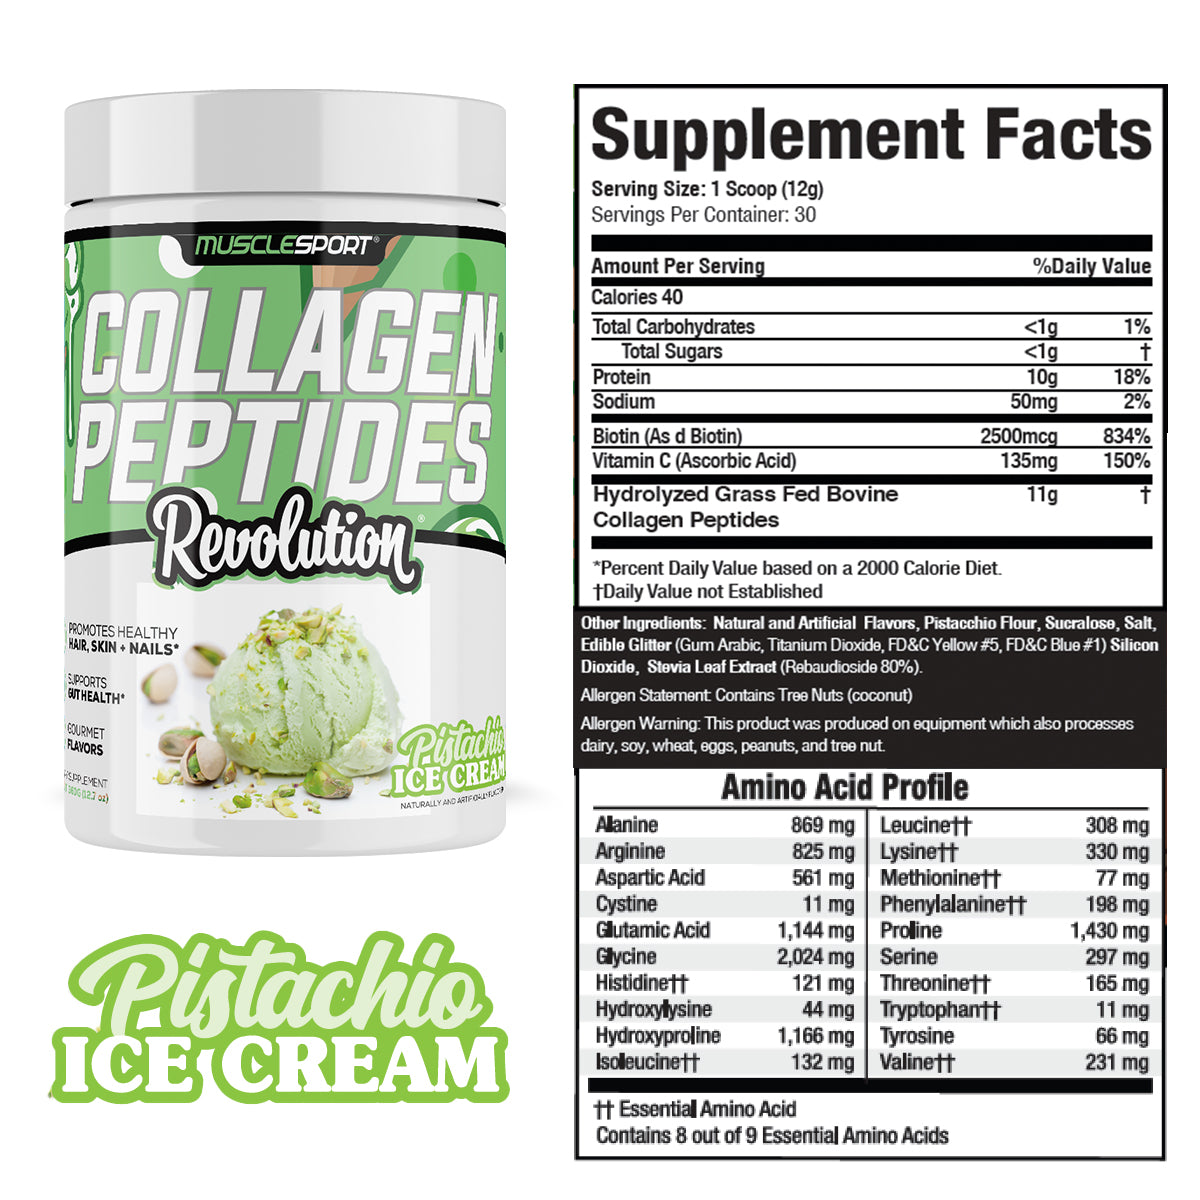 Collagen Peptides Pistachio Ice Cream Supplement Facts